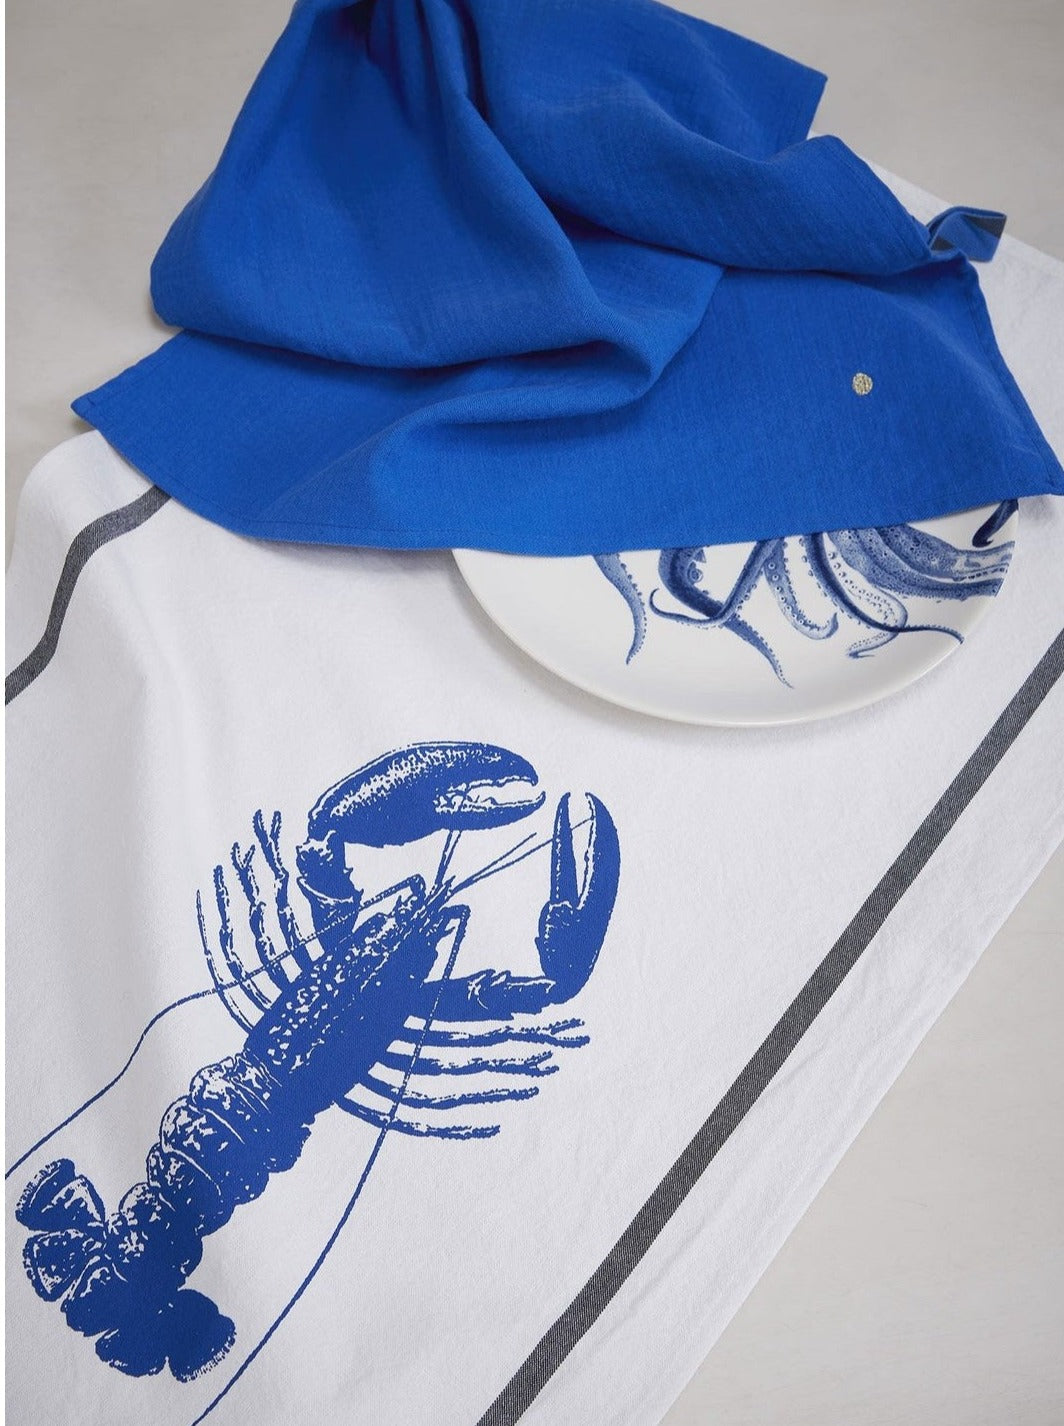 Tea towel - Lobster (Blue)